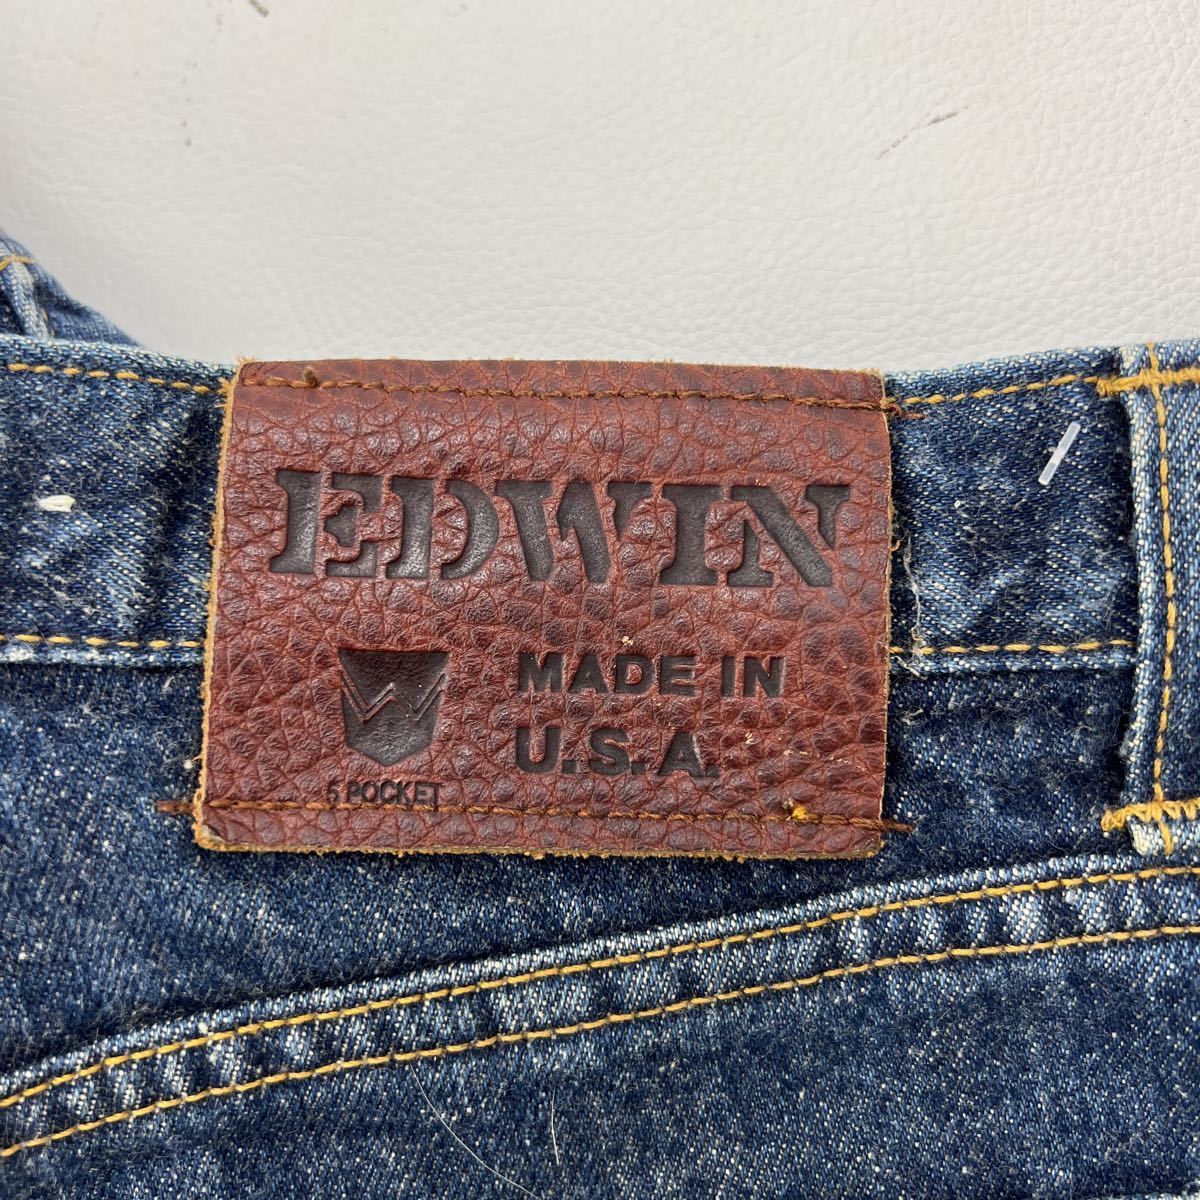  Edwin * EDWIN USA производства цвет ... Denim брюки джинсы W32 соответствует индиго голубой в дальнейшем ...! стандартный American Casual б/у одежда MIX#Ja3975